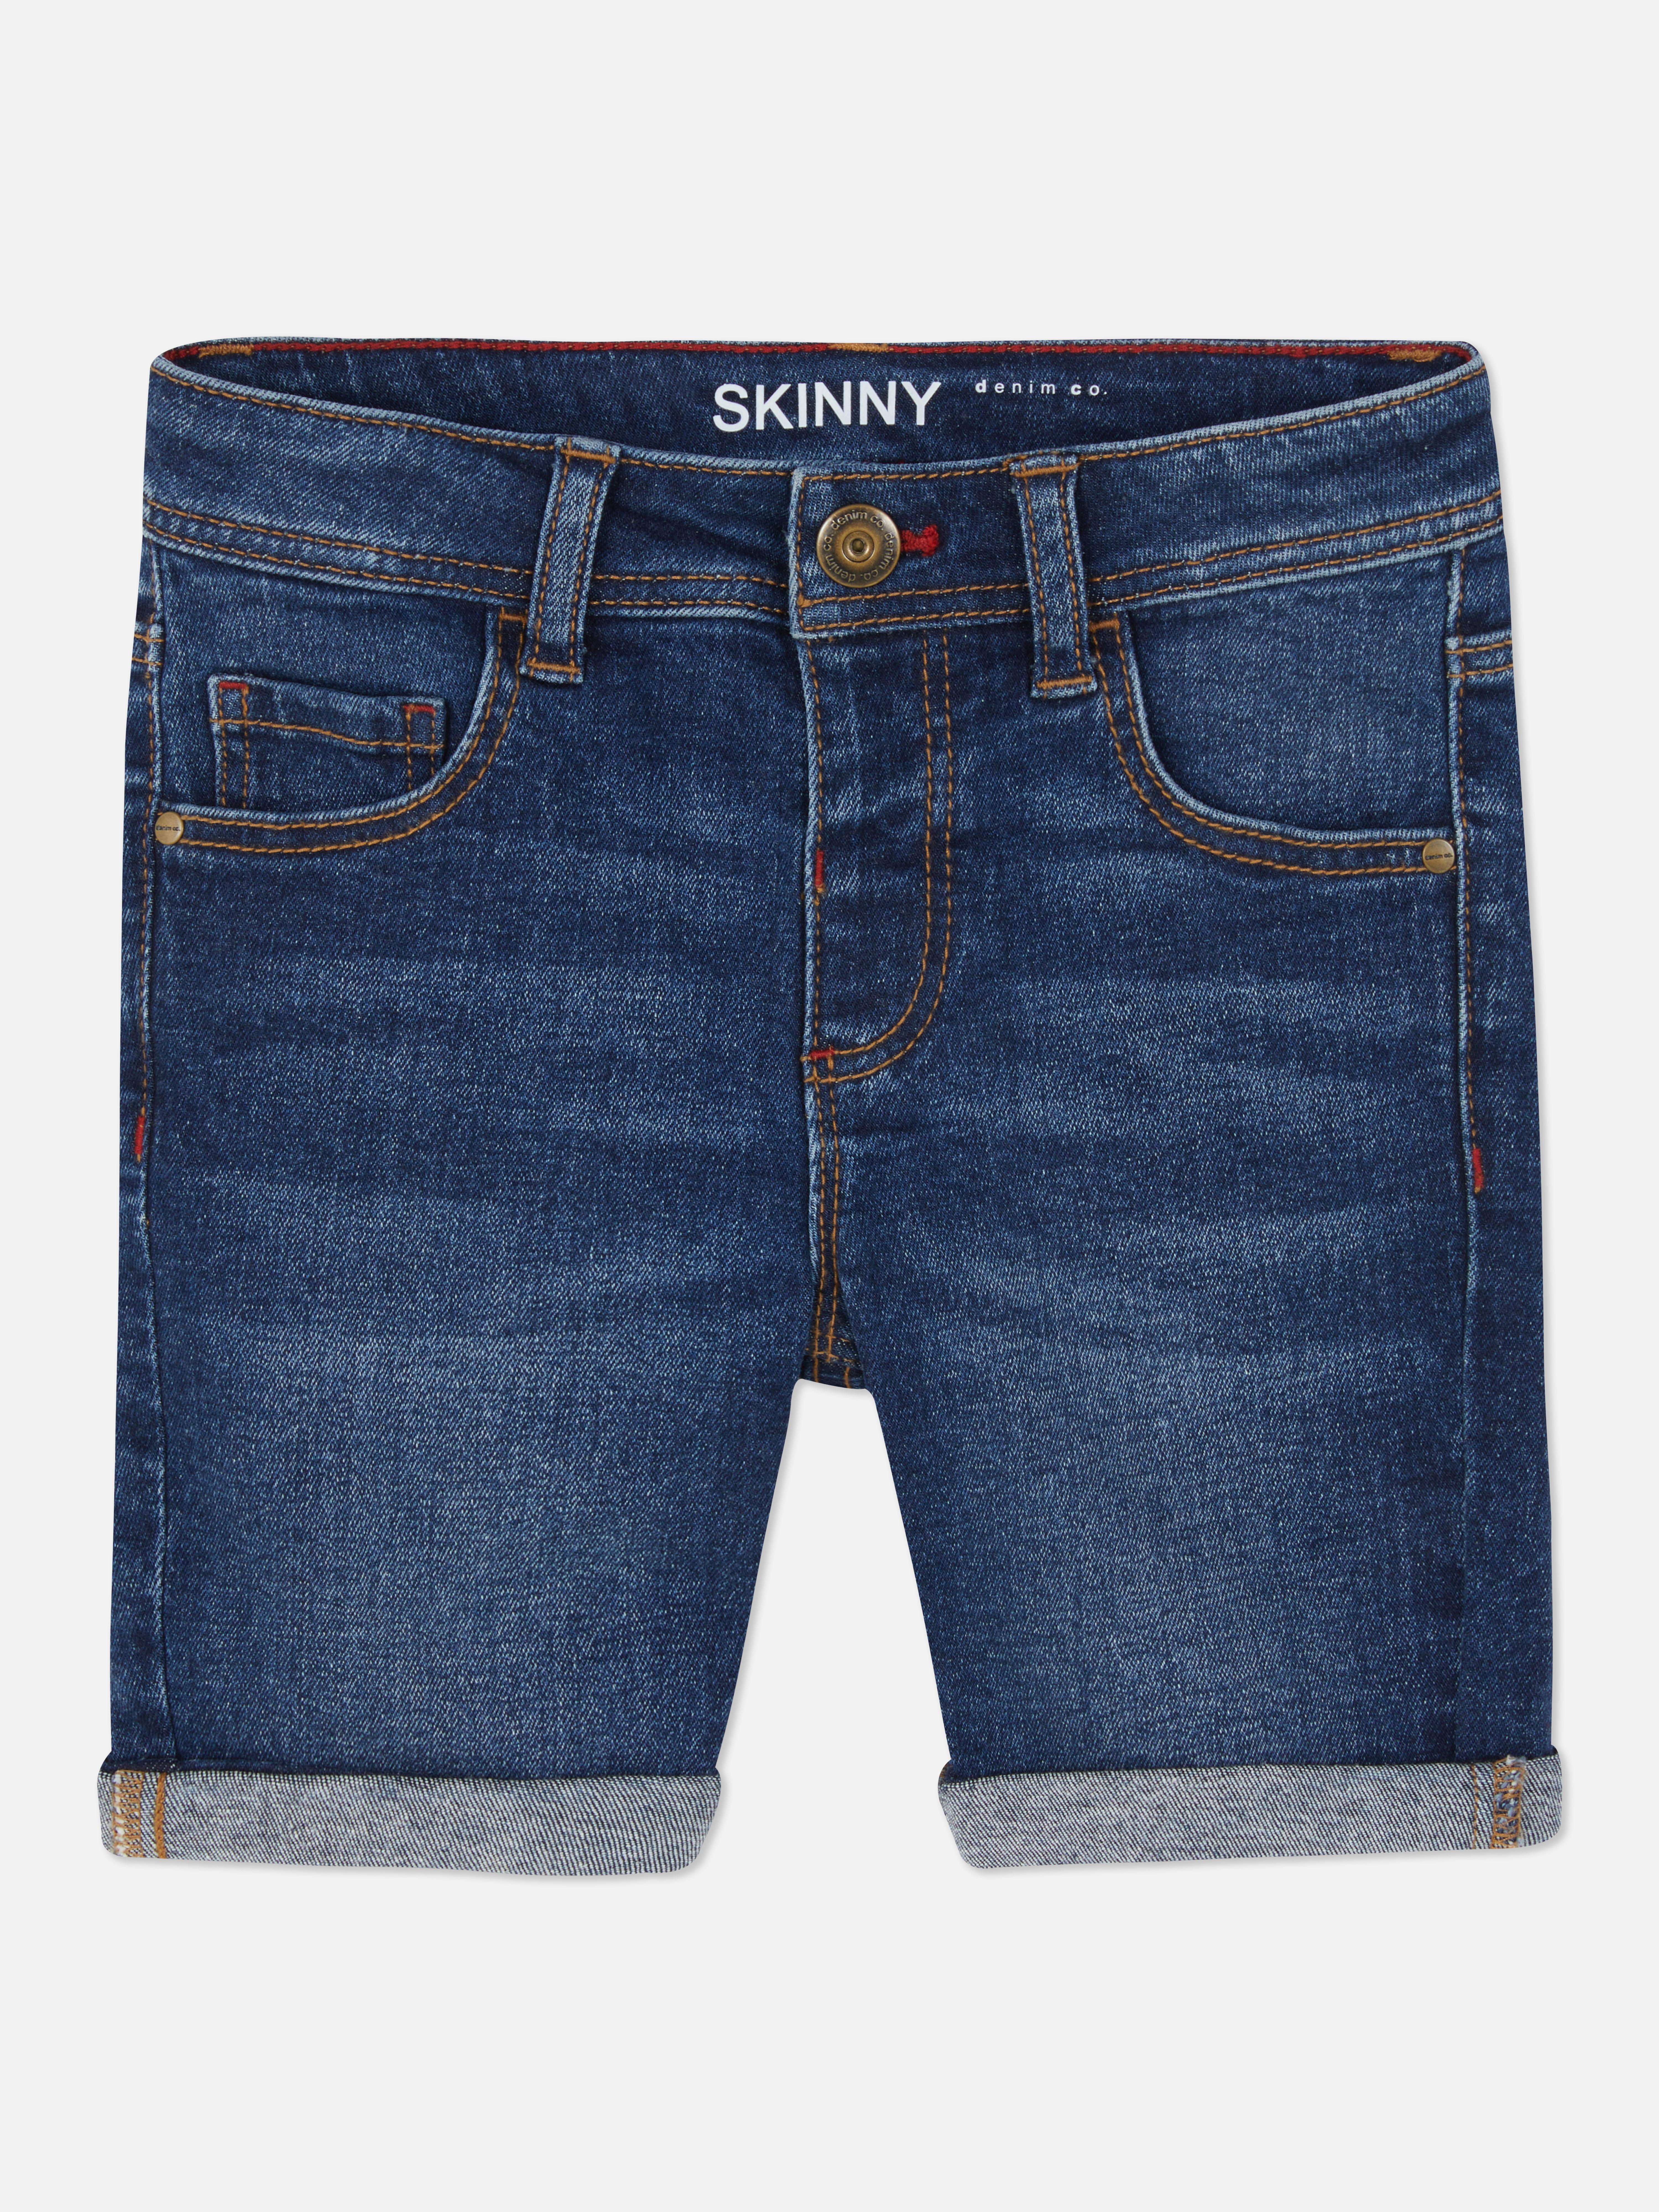 Skinny Denim Shorts